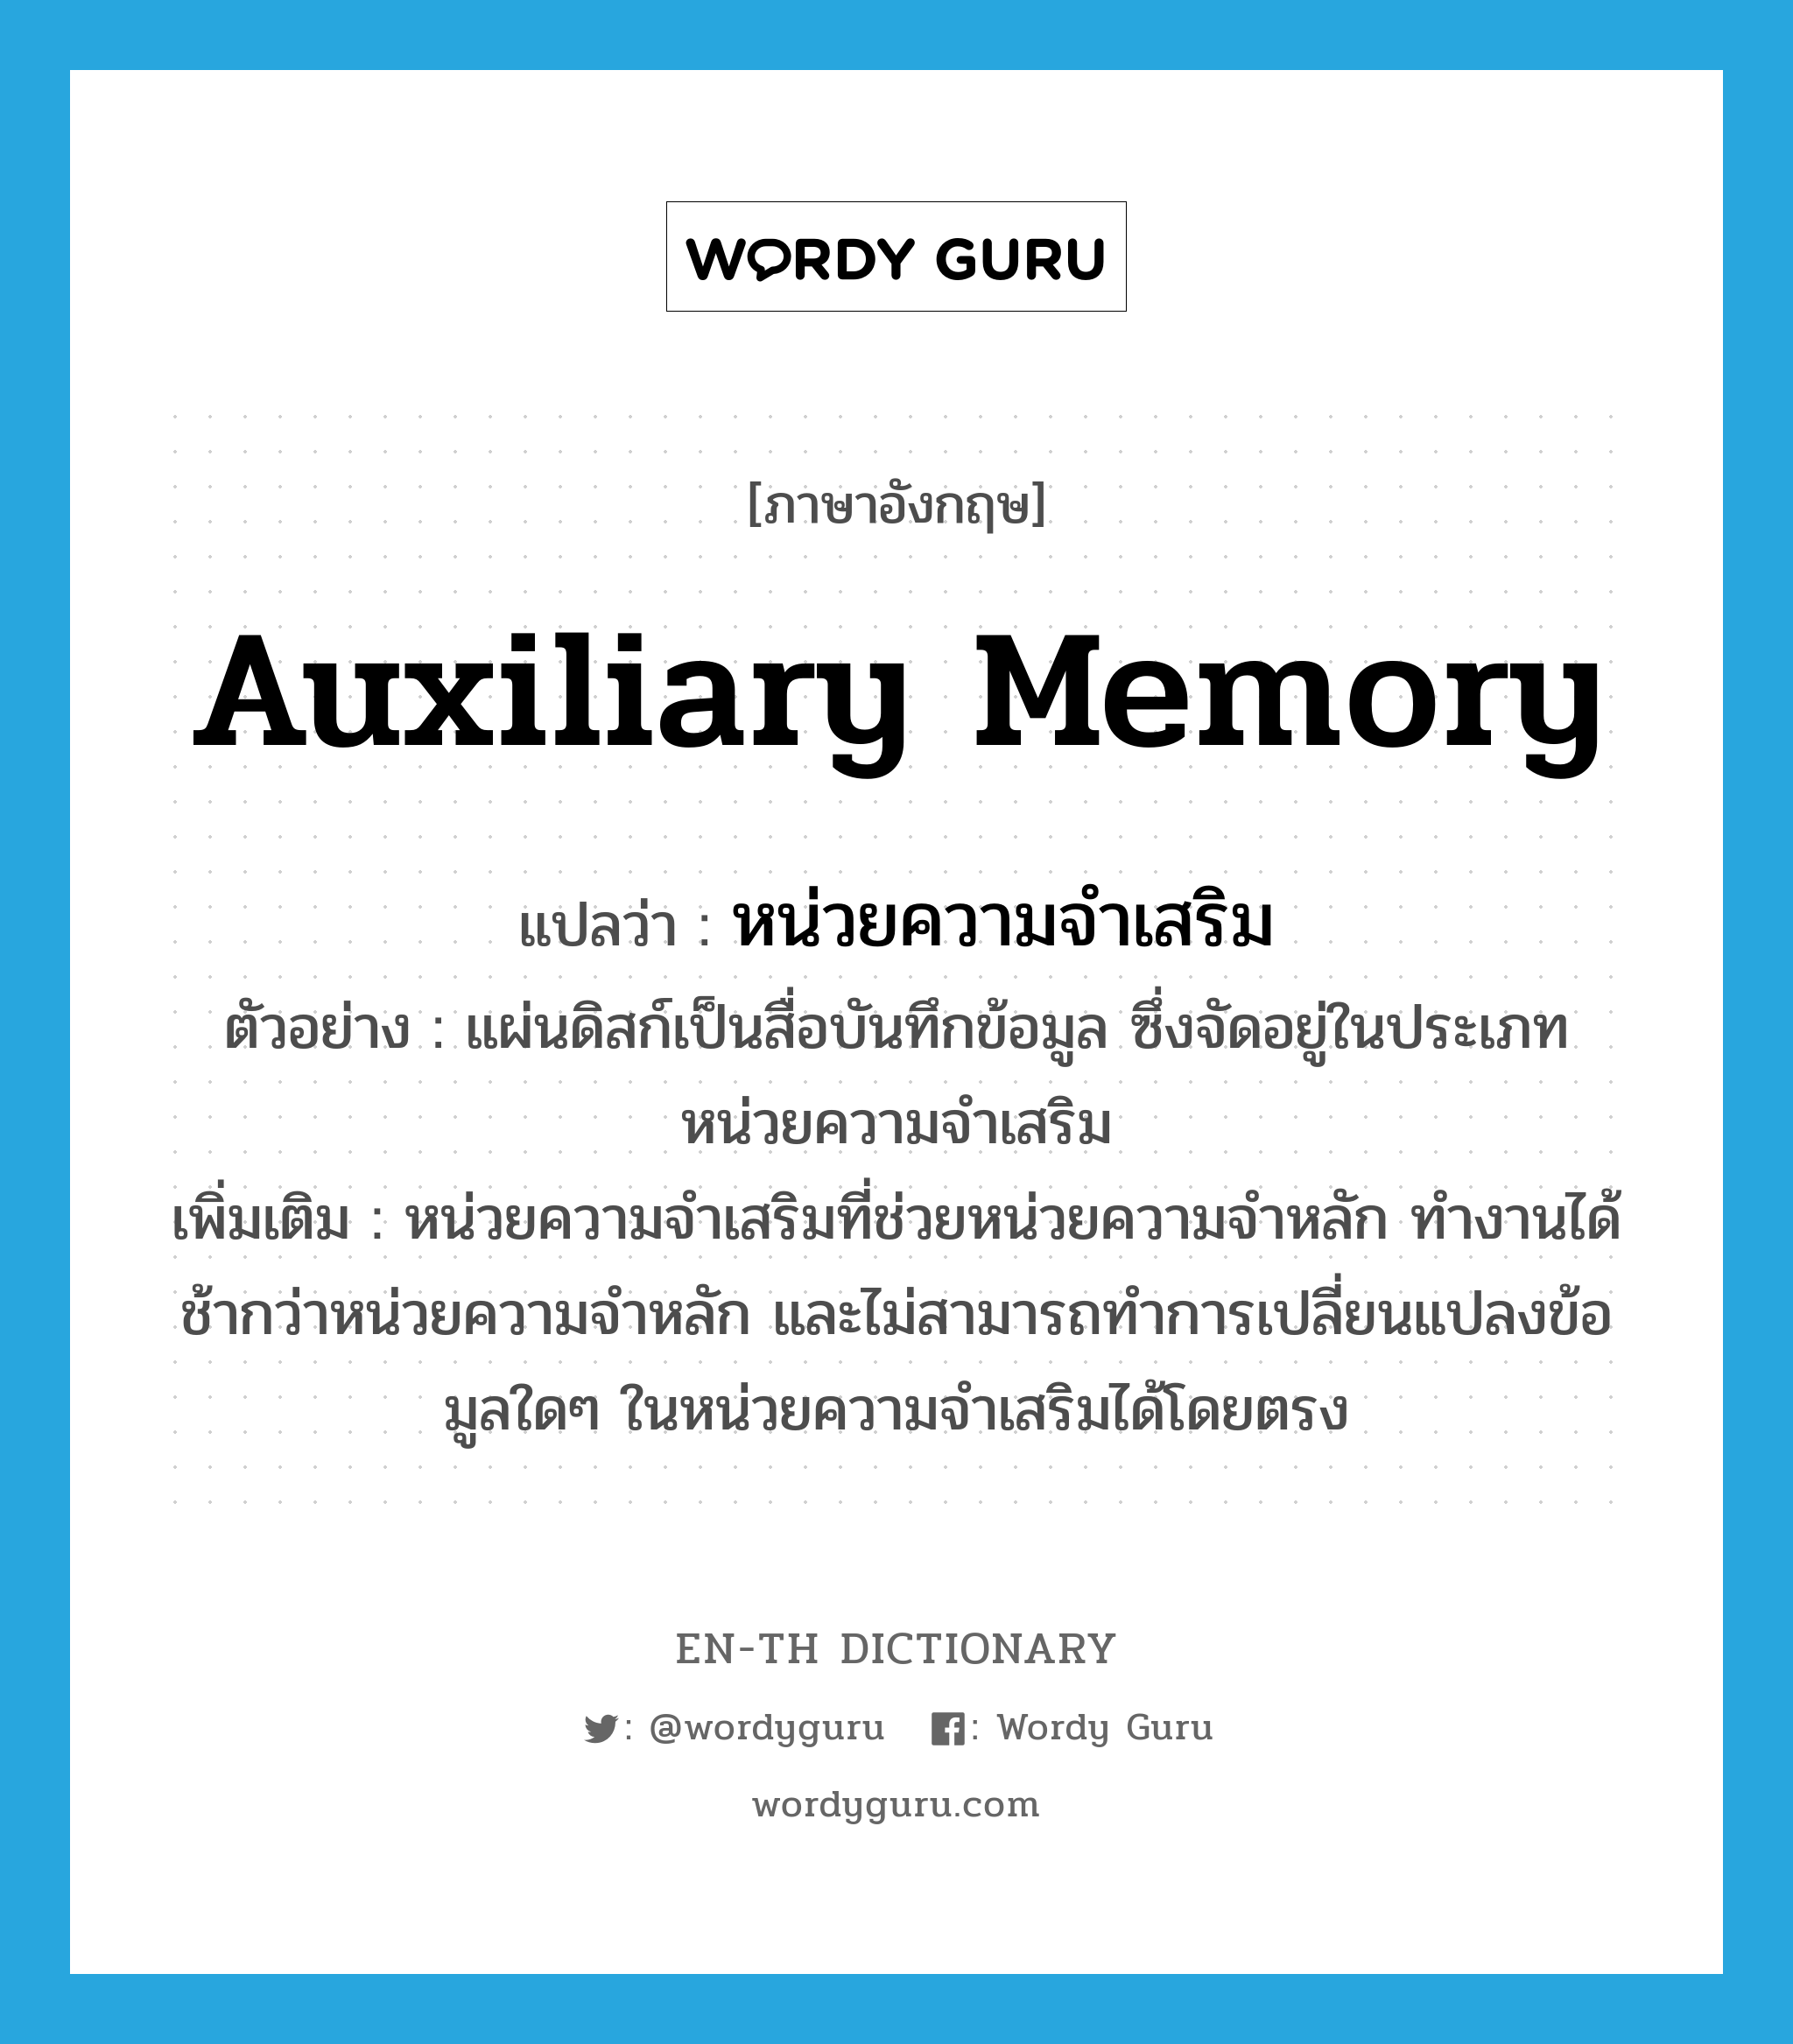 auxiliary memory แปลว่า?, คำศัพท์ภาษาอังกฤษ auxiliary memory แปลว่า หน่วยความจำเสริม ประเภท N ตัวอย่าง แผ่นดิสก์เป็นสื่อบันทึกข้อมูล ซึ่งจัดอยู่ในประเภทหน่วยความจำเสริม เพิ่มเติม หน่วยความจำเสริมที่ช่วยหน่วยความจำหลัก ทำงานได้ช้ากว่าหน่วยความจำหลัก และไม่สามารถทำการเปลี่ยนแปลงข้อมูลใดๆ ในหน่วยความจำเสริมได้โดยตรง หมวด N